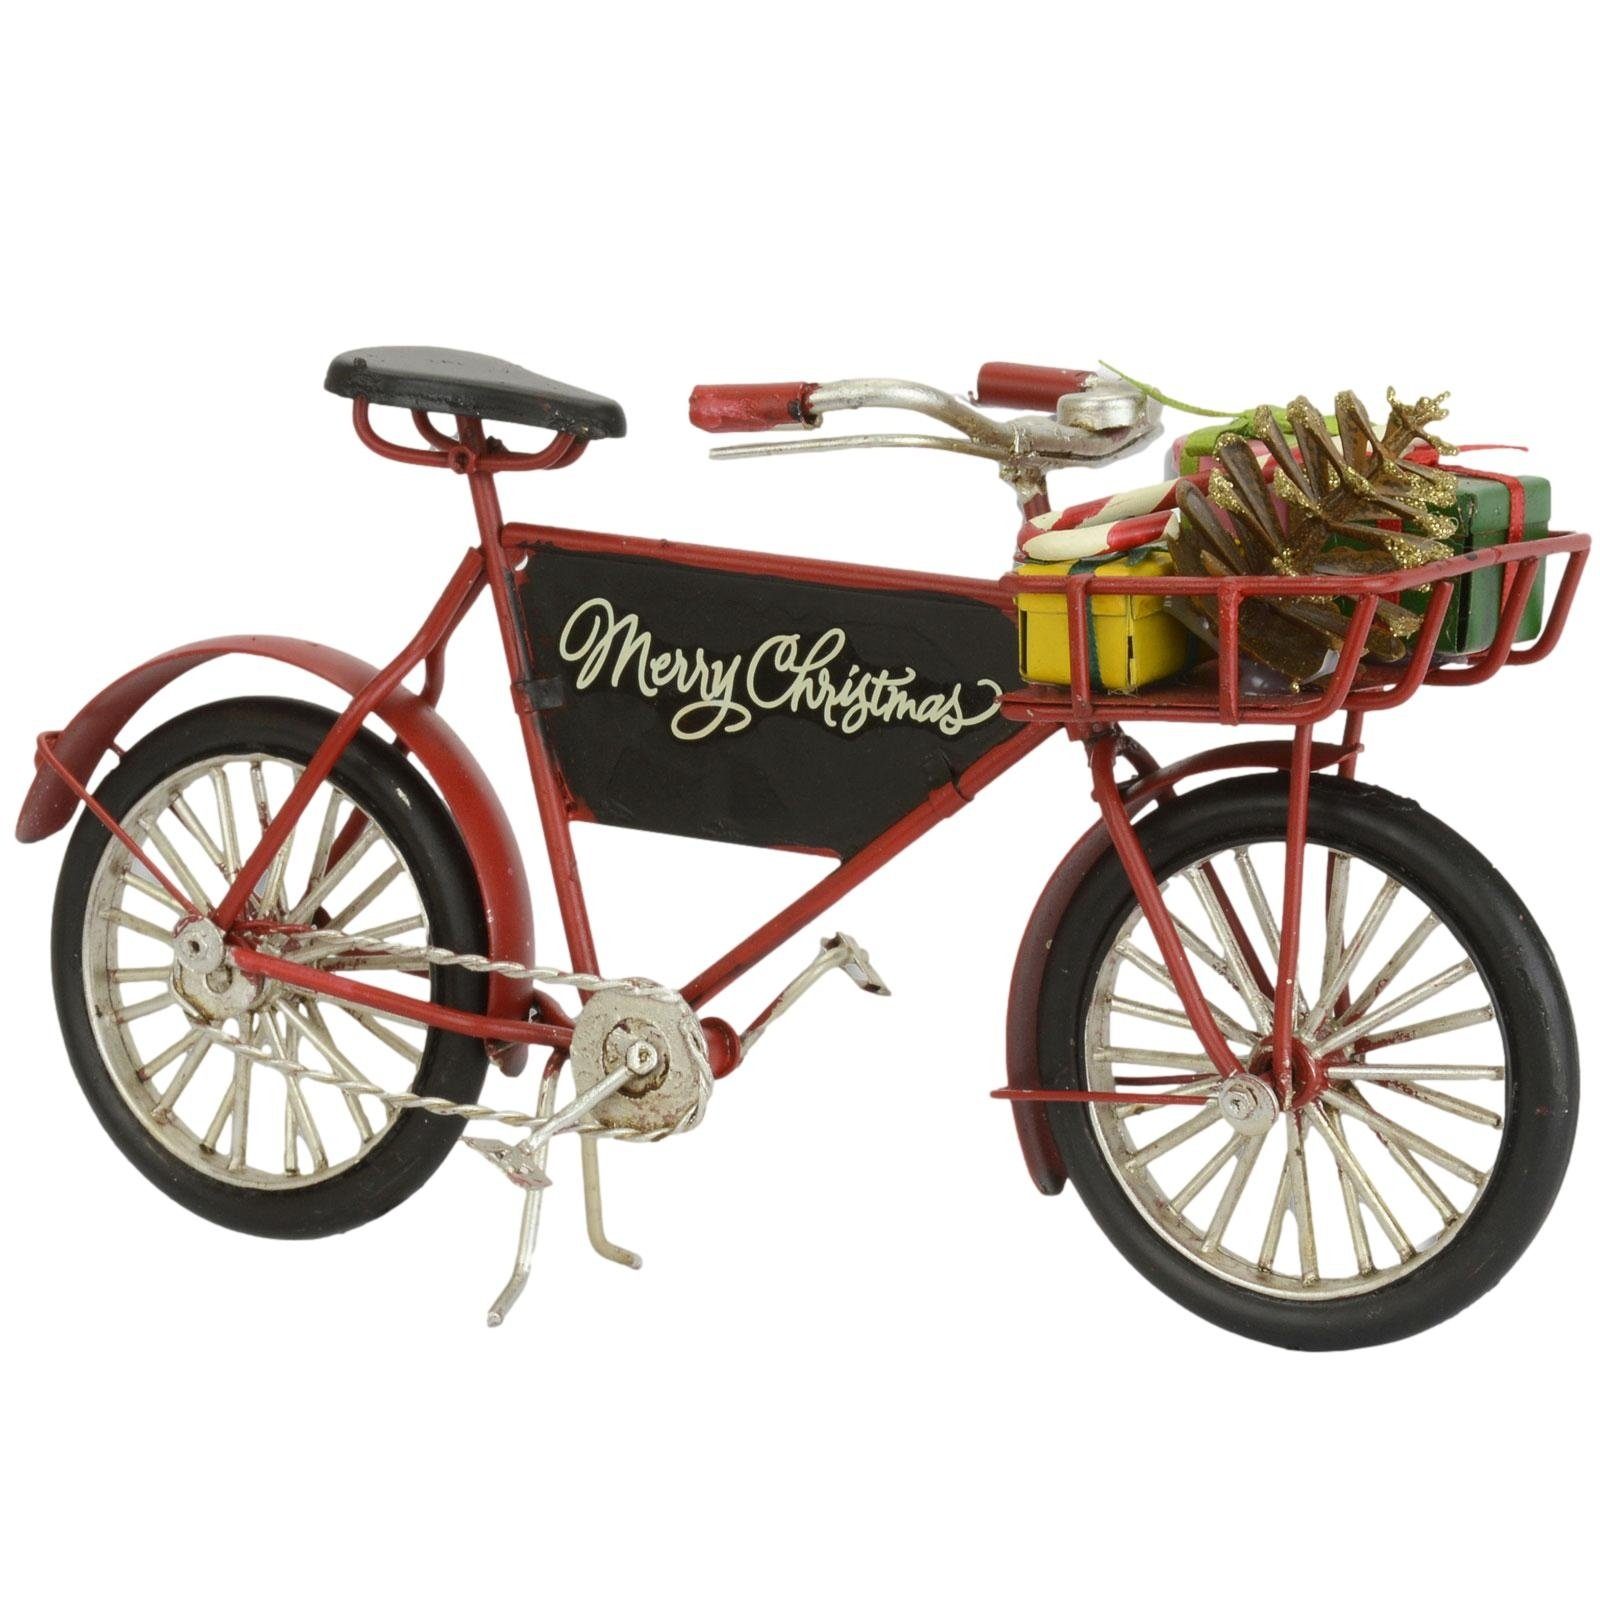 Nostalgie Weihnachten Metall Aubaho Dekoration 24cm Antik-Stil Fahrrad Dekoobjekt